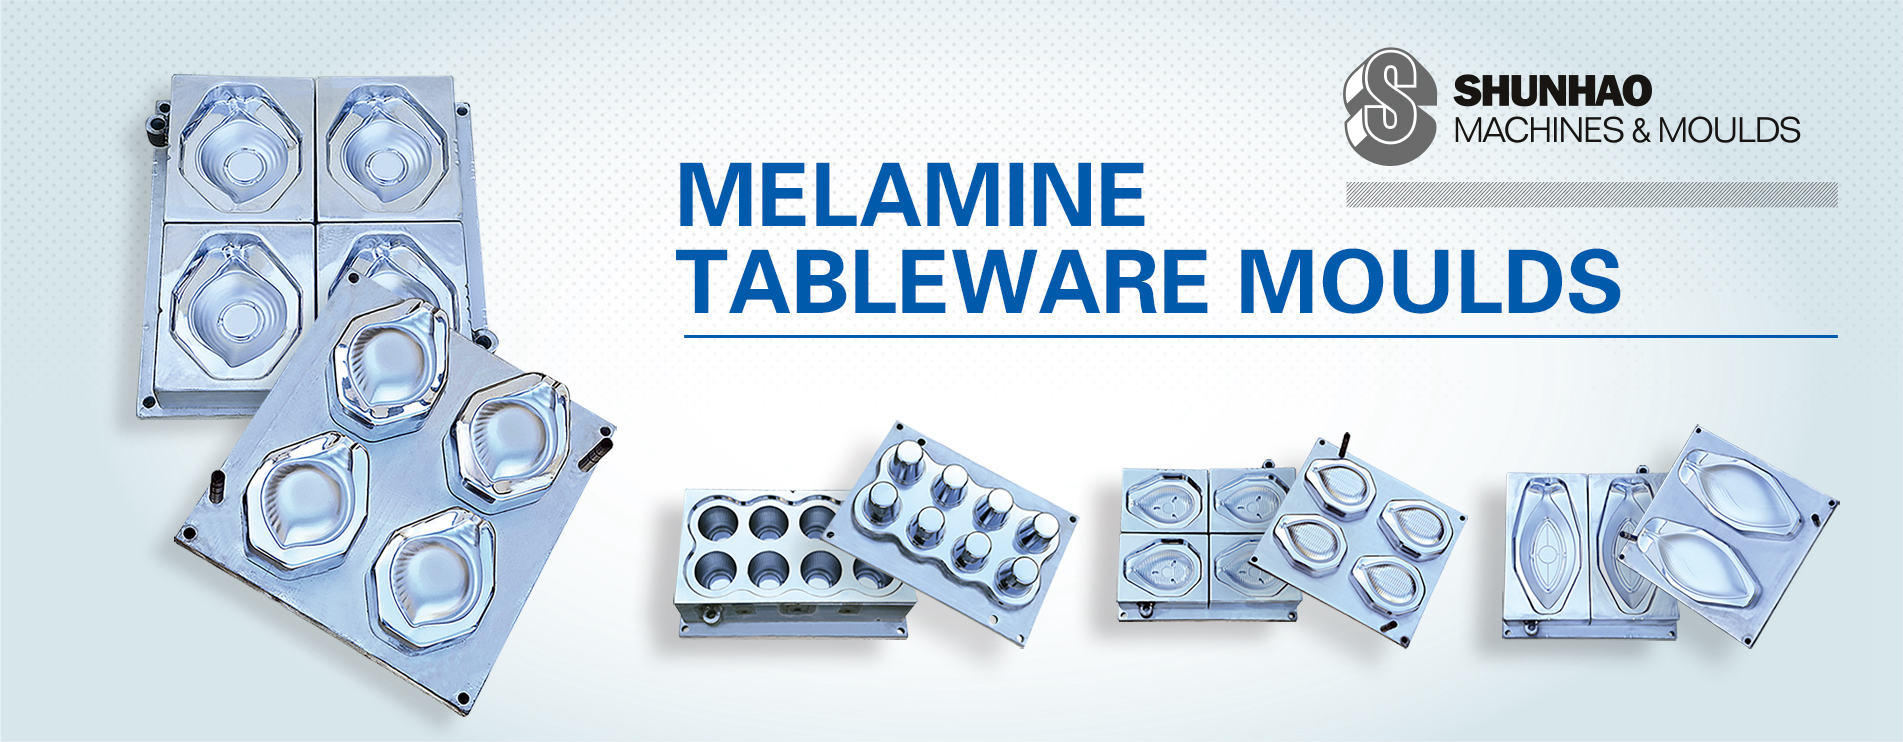 Melamine Tableware Moulds